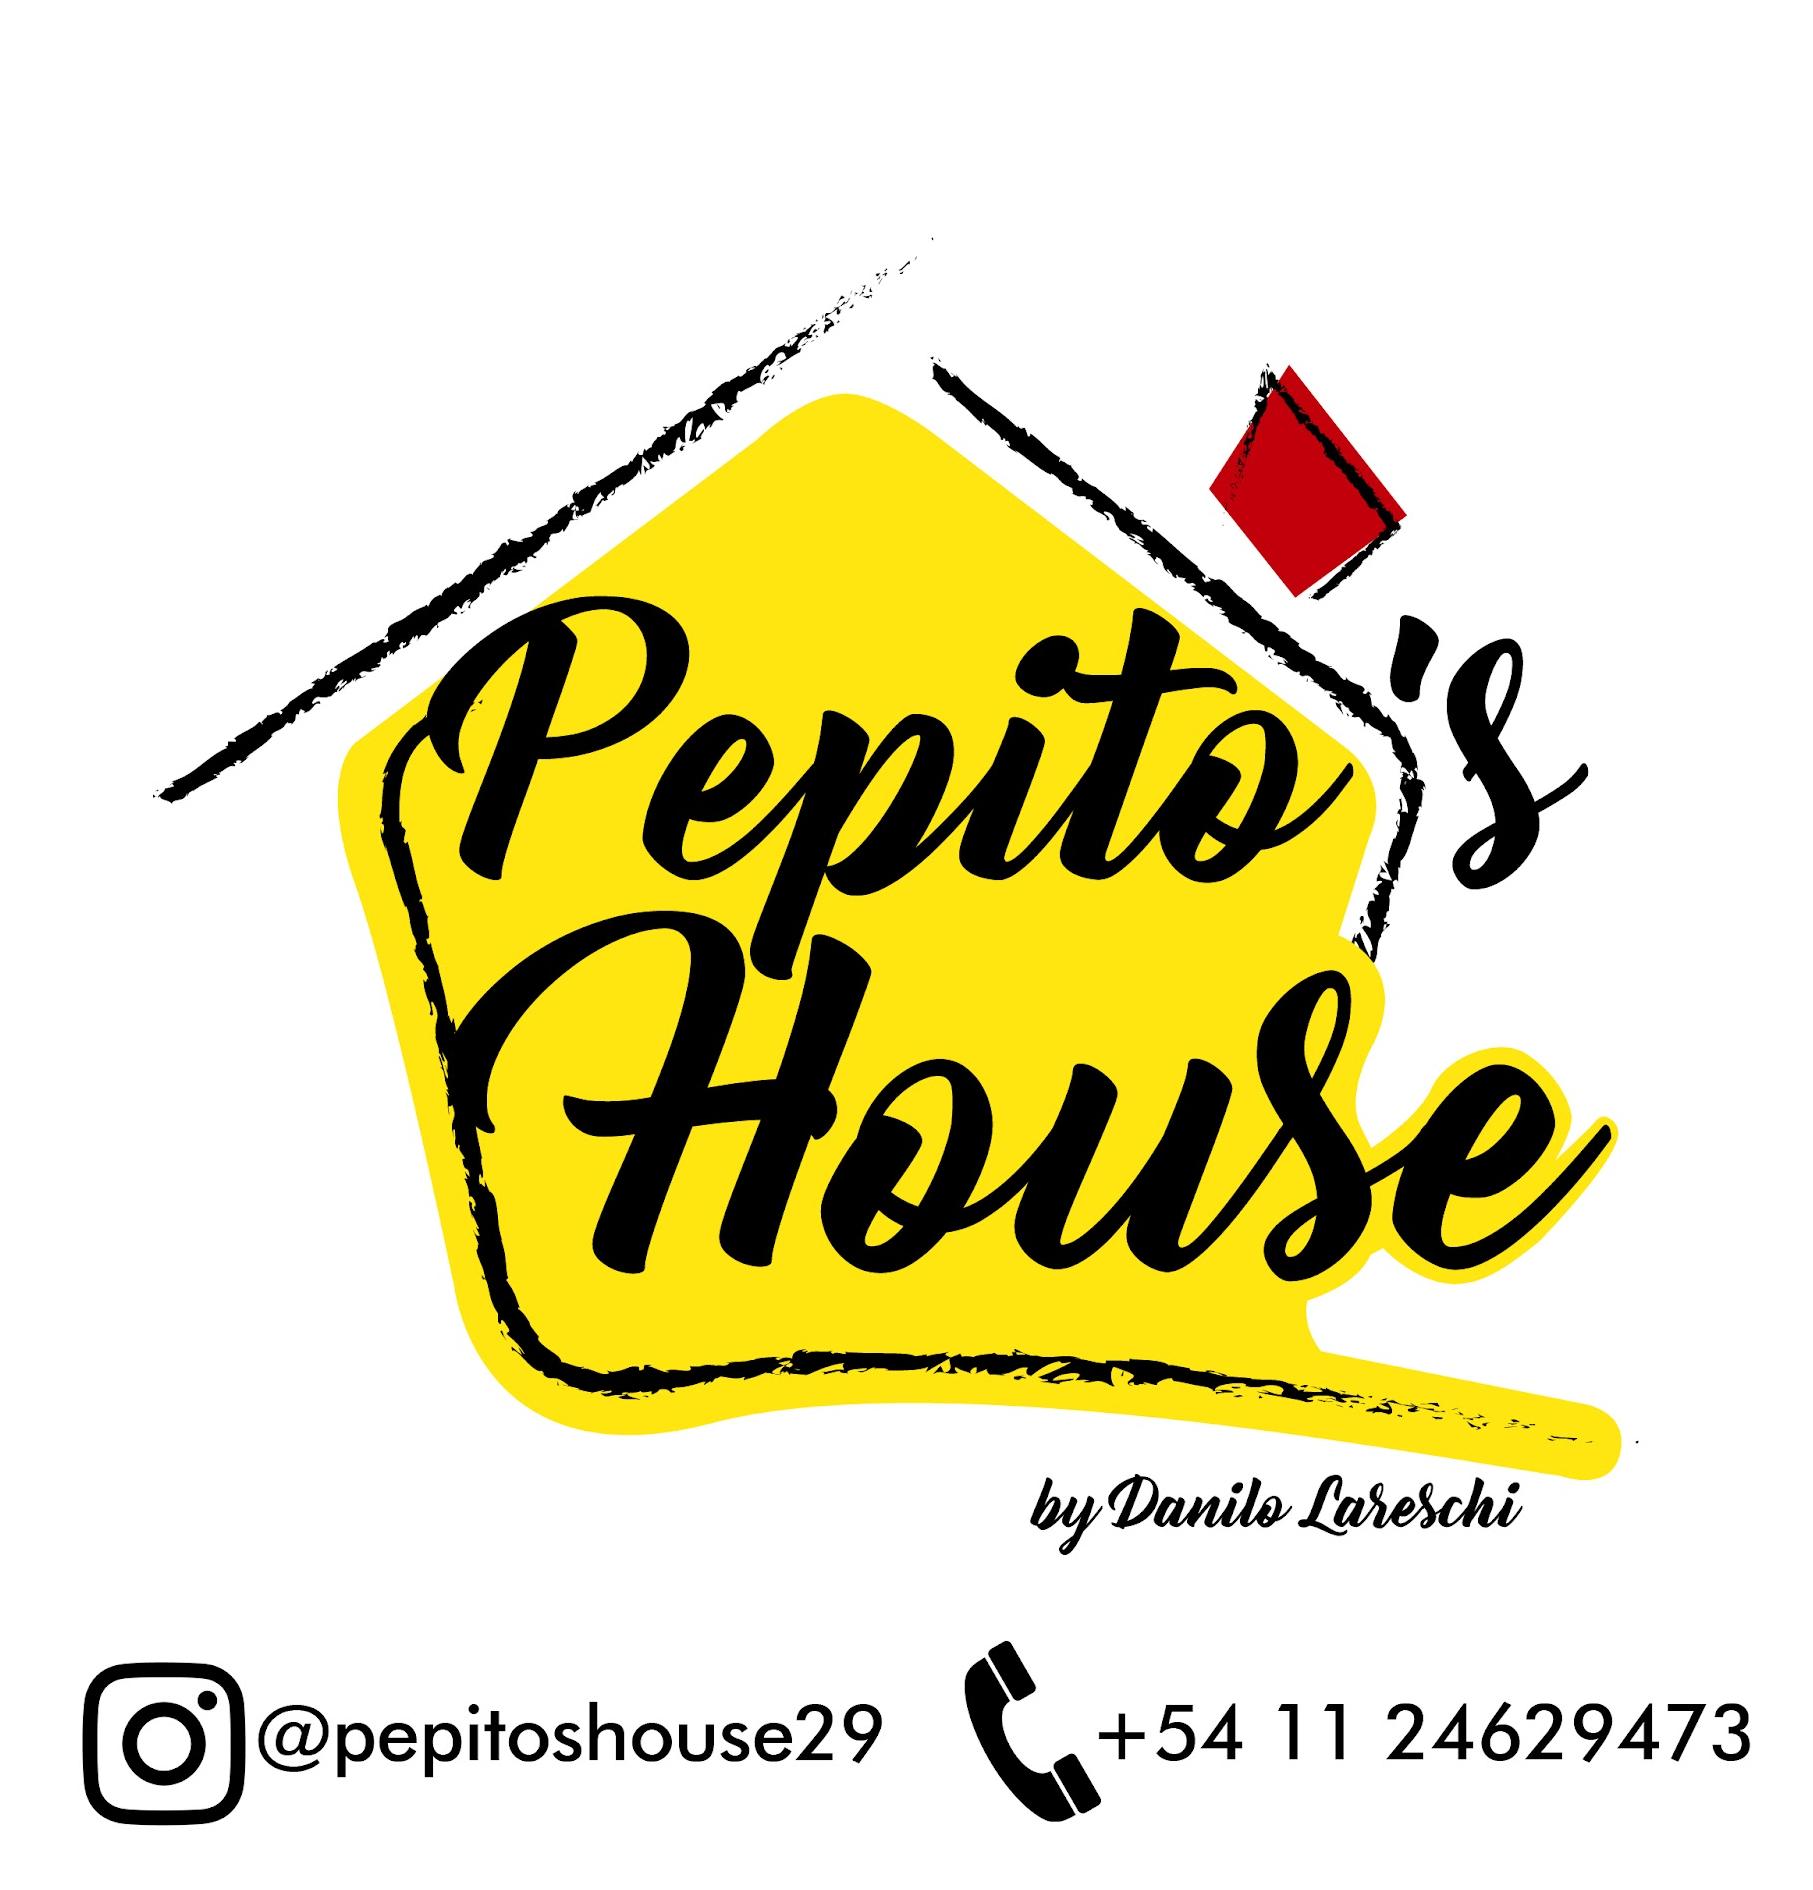 Pepitos house